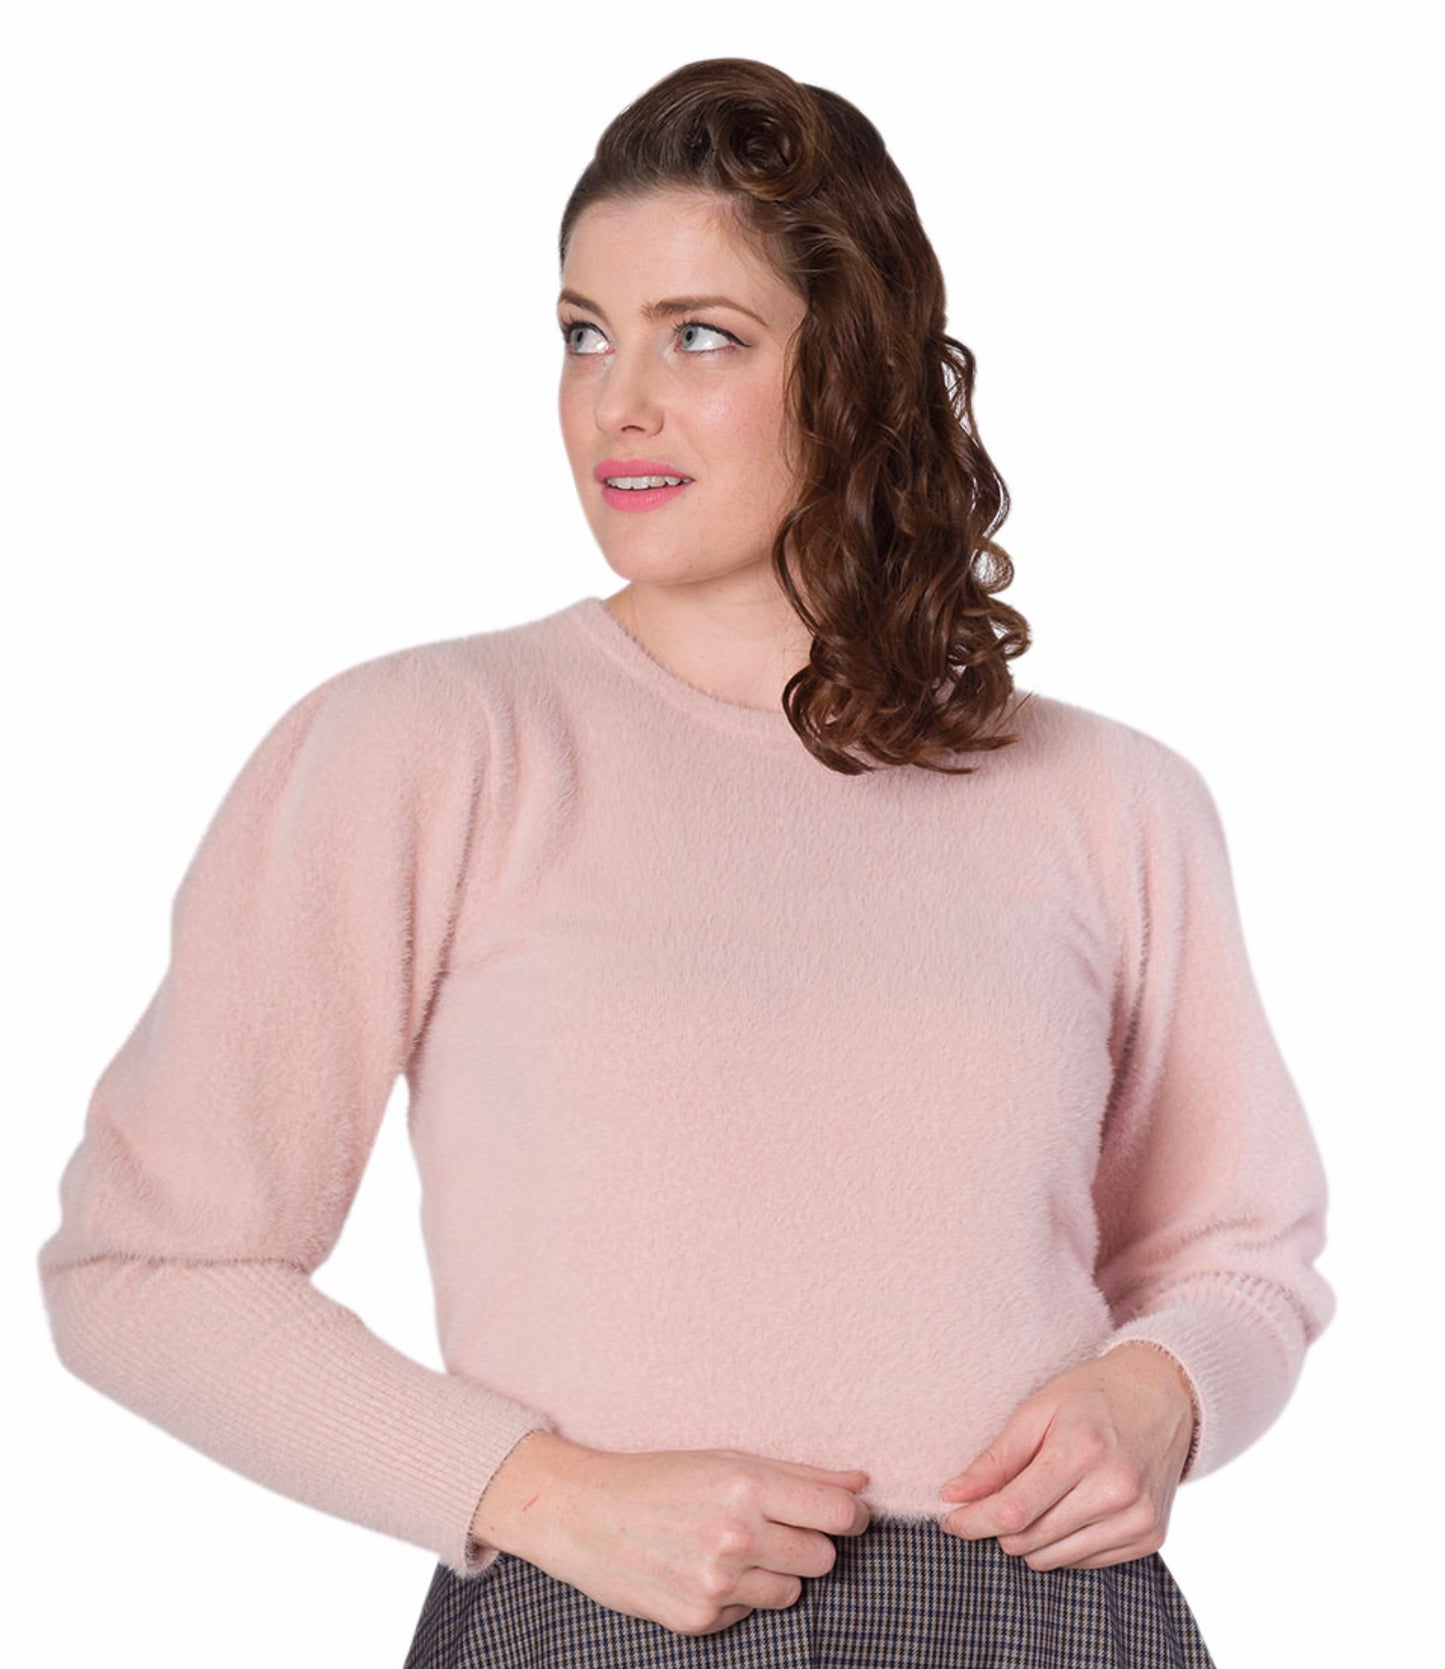 Soft jumper in pink - Isabel’s Retro & Vintage Clothing